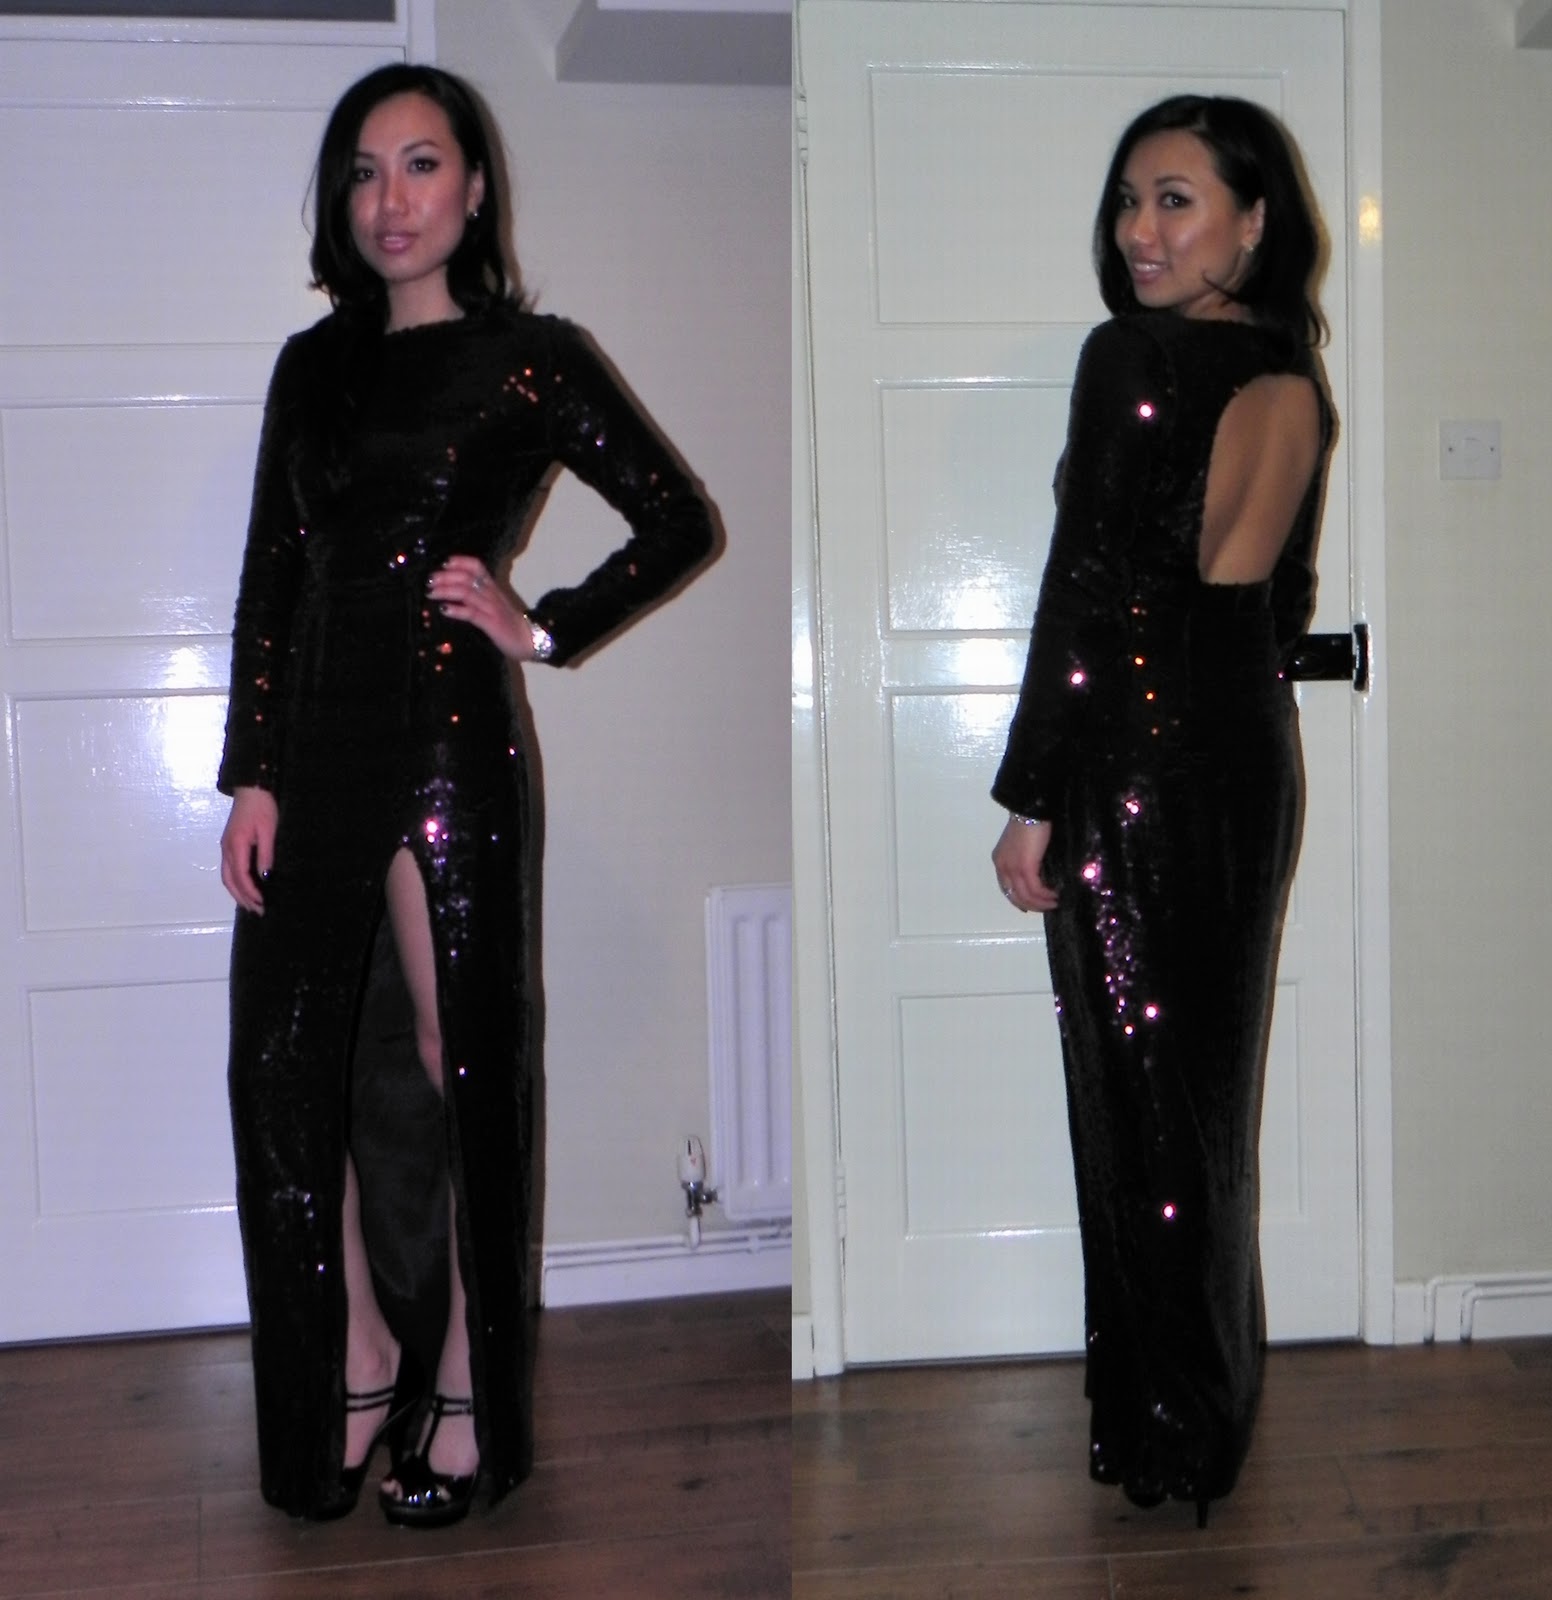 http://4.bp.blogspot.com/-5QJqMW8Xe_Q/TZEE3pHF8kI/AAAAAAAAAnY/FdaTxqM-K_c/s1600/Asos+sequin+maxi+dress+with+side+split+2.jpg